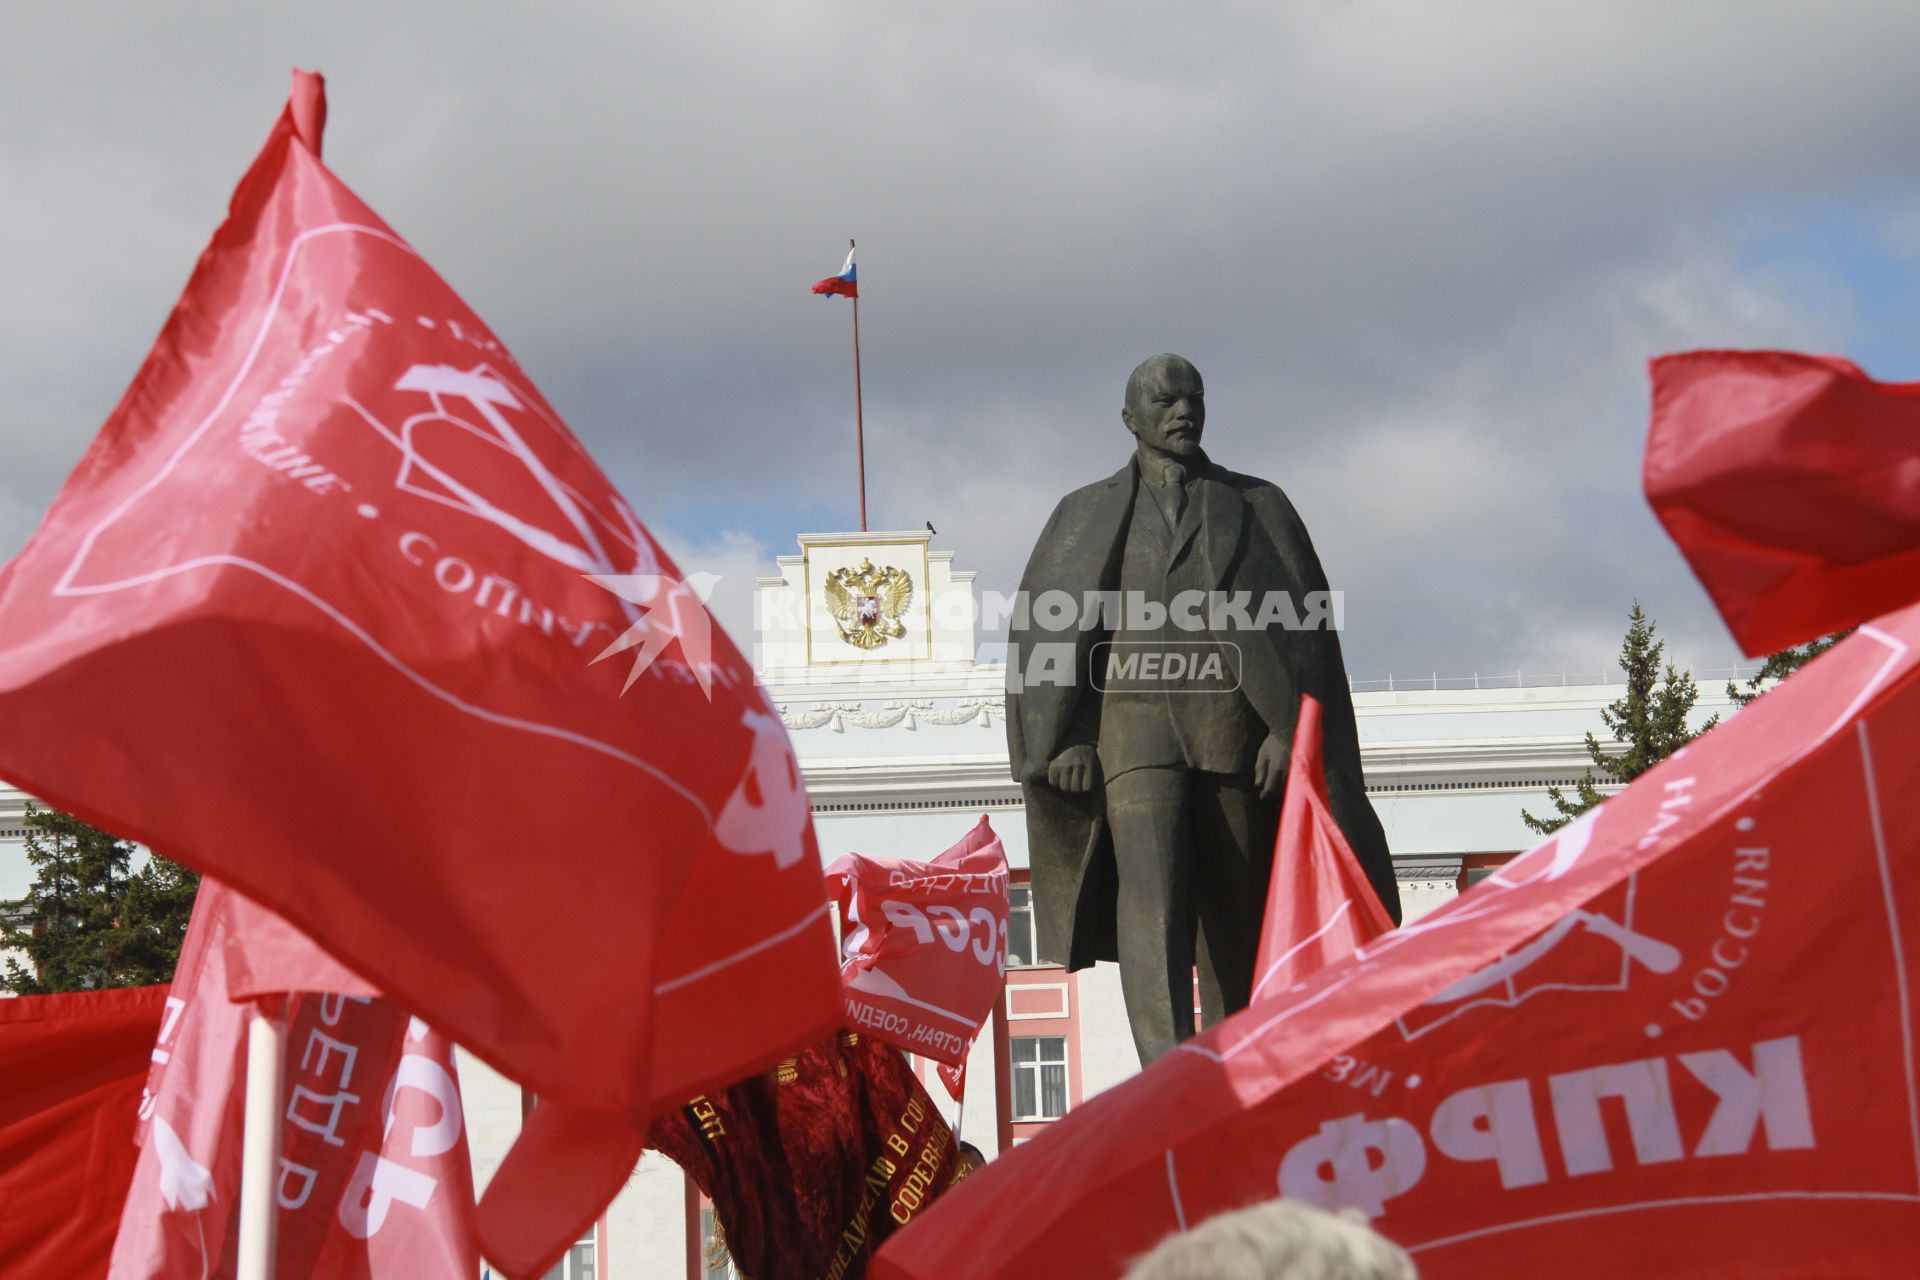 Митинг КПРФ на 1 Мая. Памятник Владимиру Ленину в окружении красных флагов.